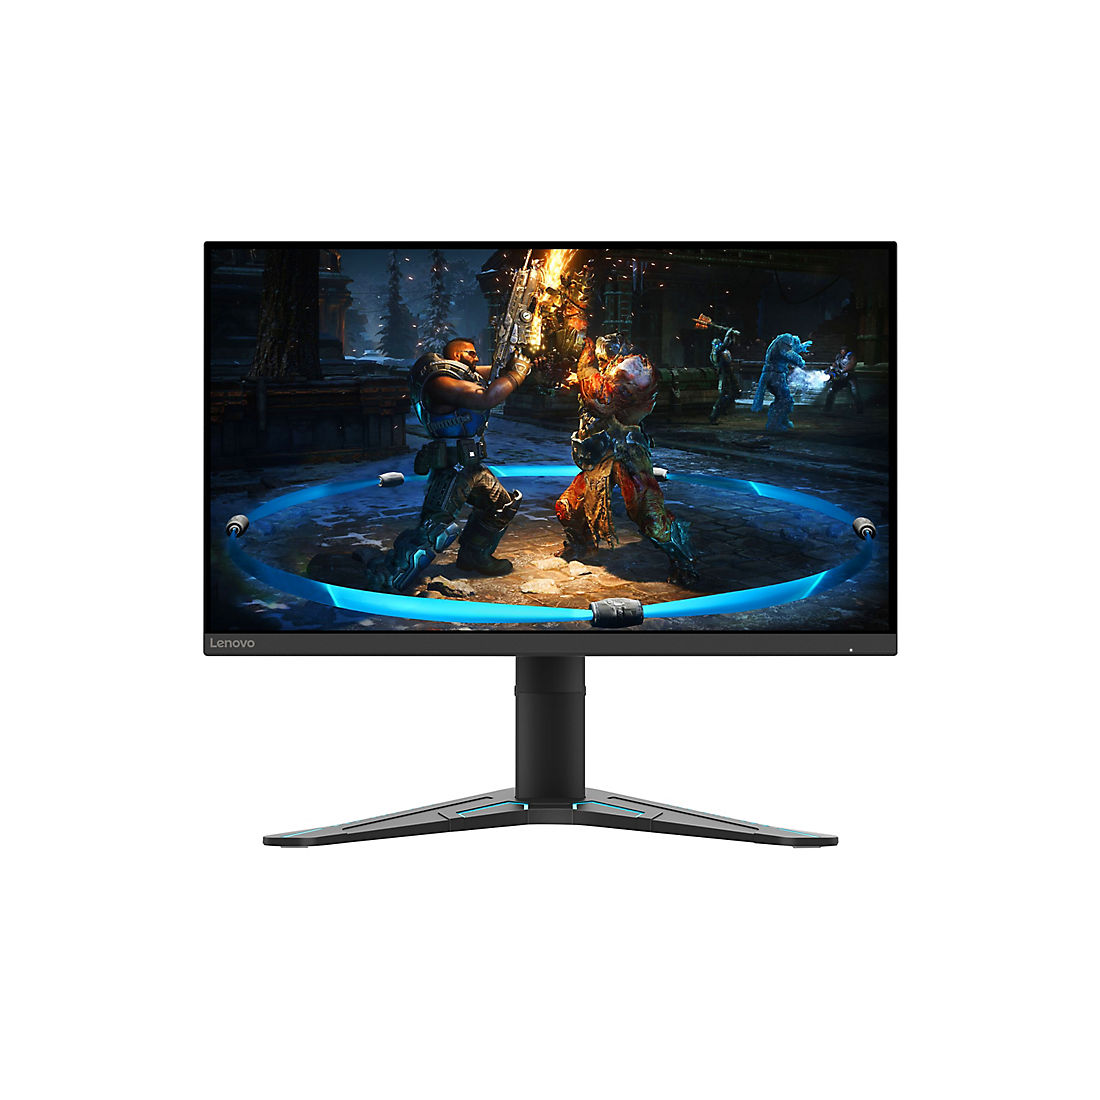 Lenovo G27-20 27 1080p LCD Gaming Monitor